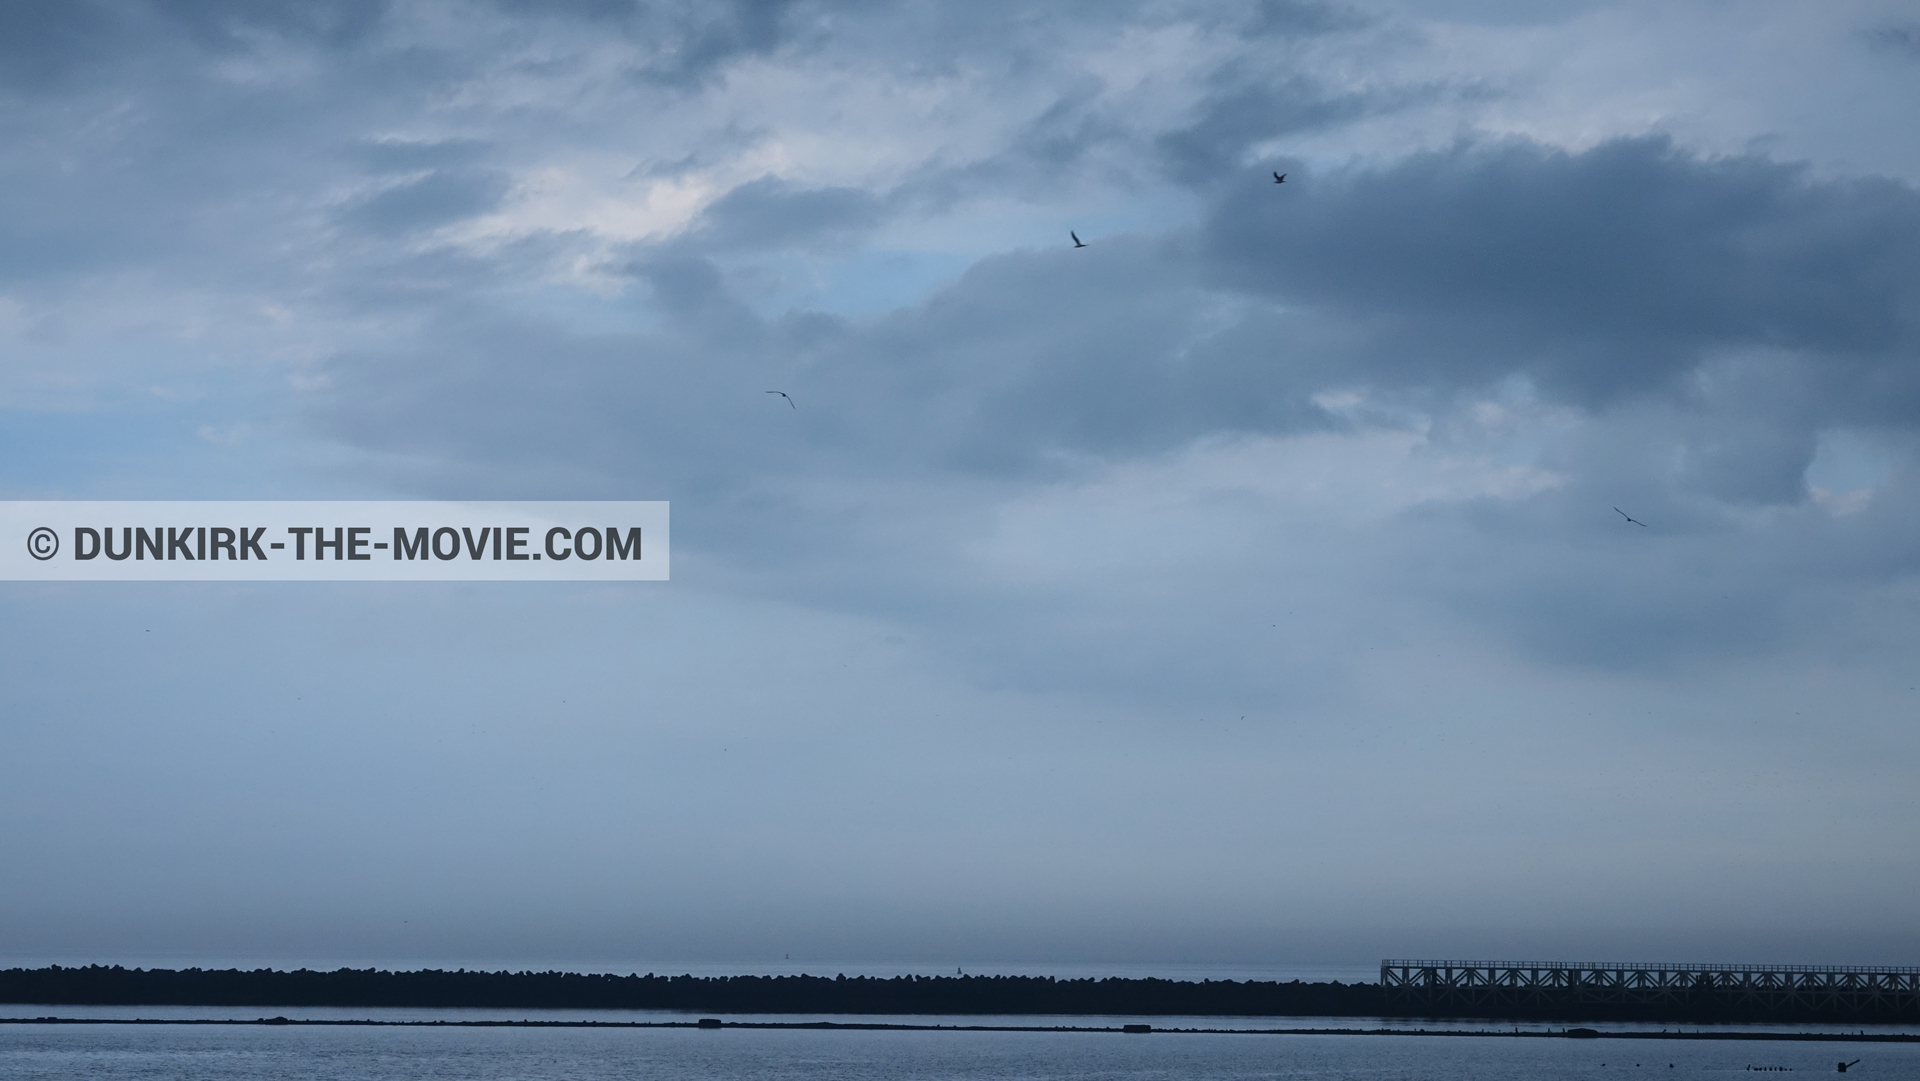 Fotos con cielo nublado, muelle del ESTE,  durante el rodaje de la película Dunkerque de Nolan